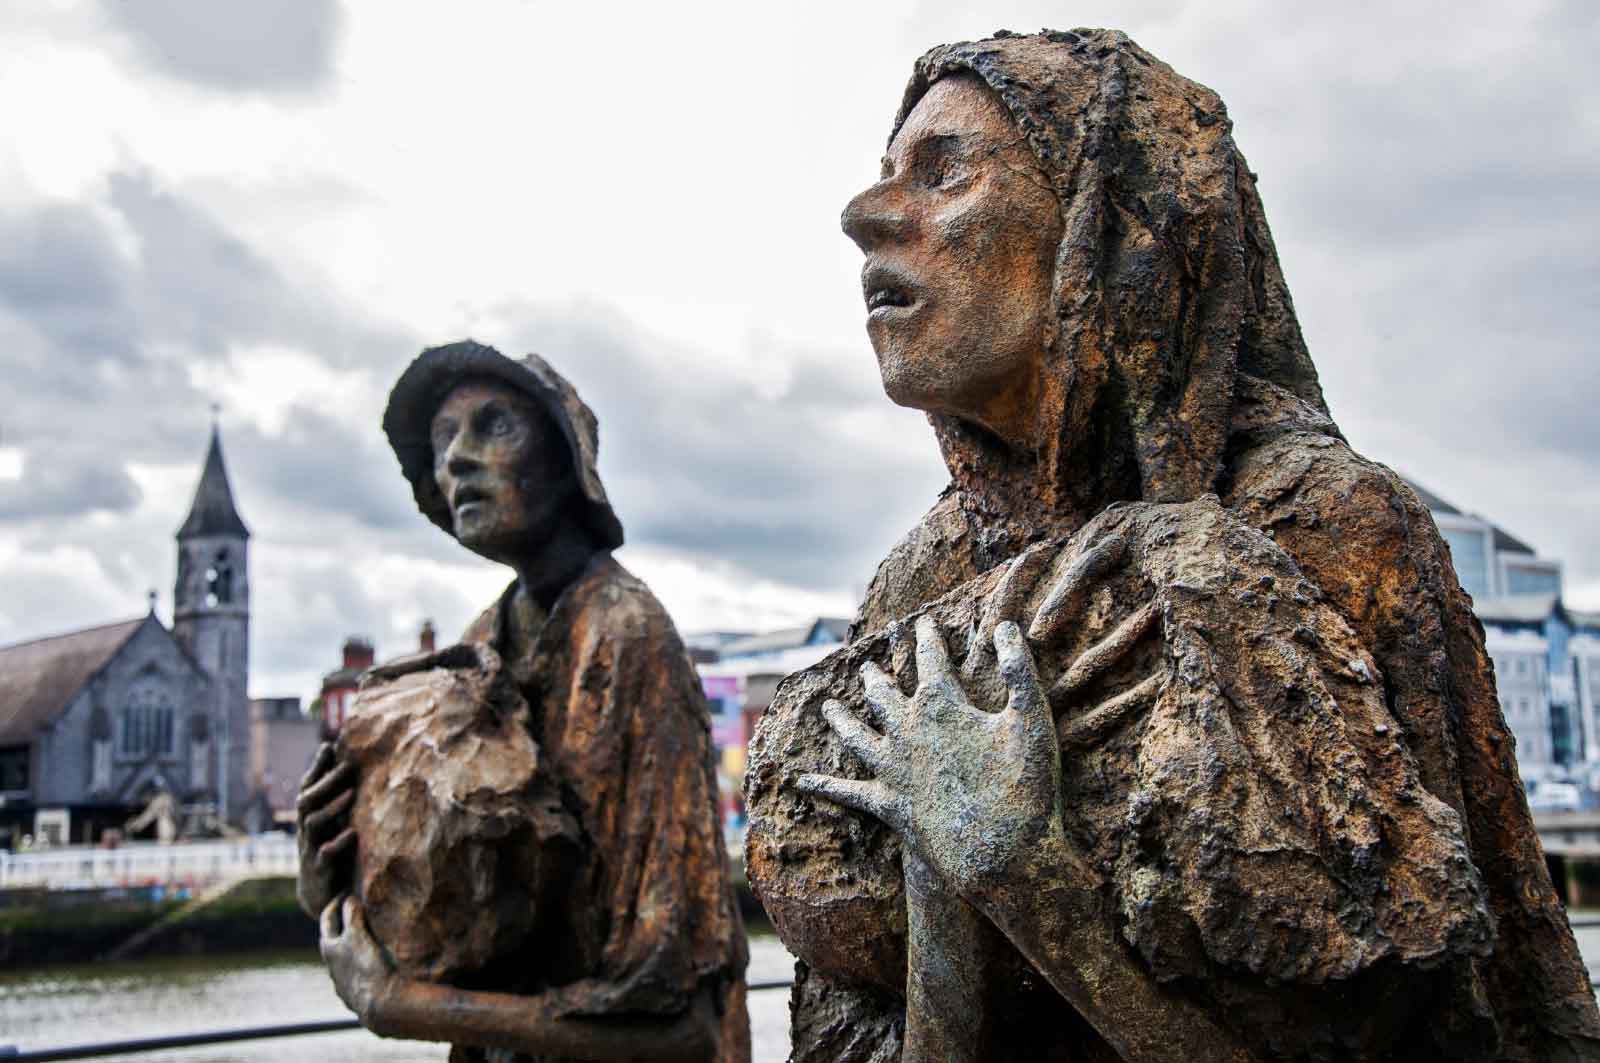 האנדרטה לזכר רעב תפוחי האדמה, בדבלין בירת אירלנד (צילום: Yulia Plekhanova / Shutterstock.com)